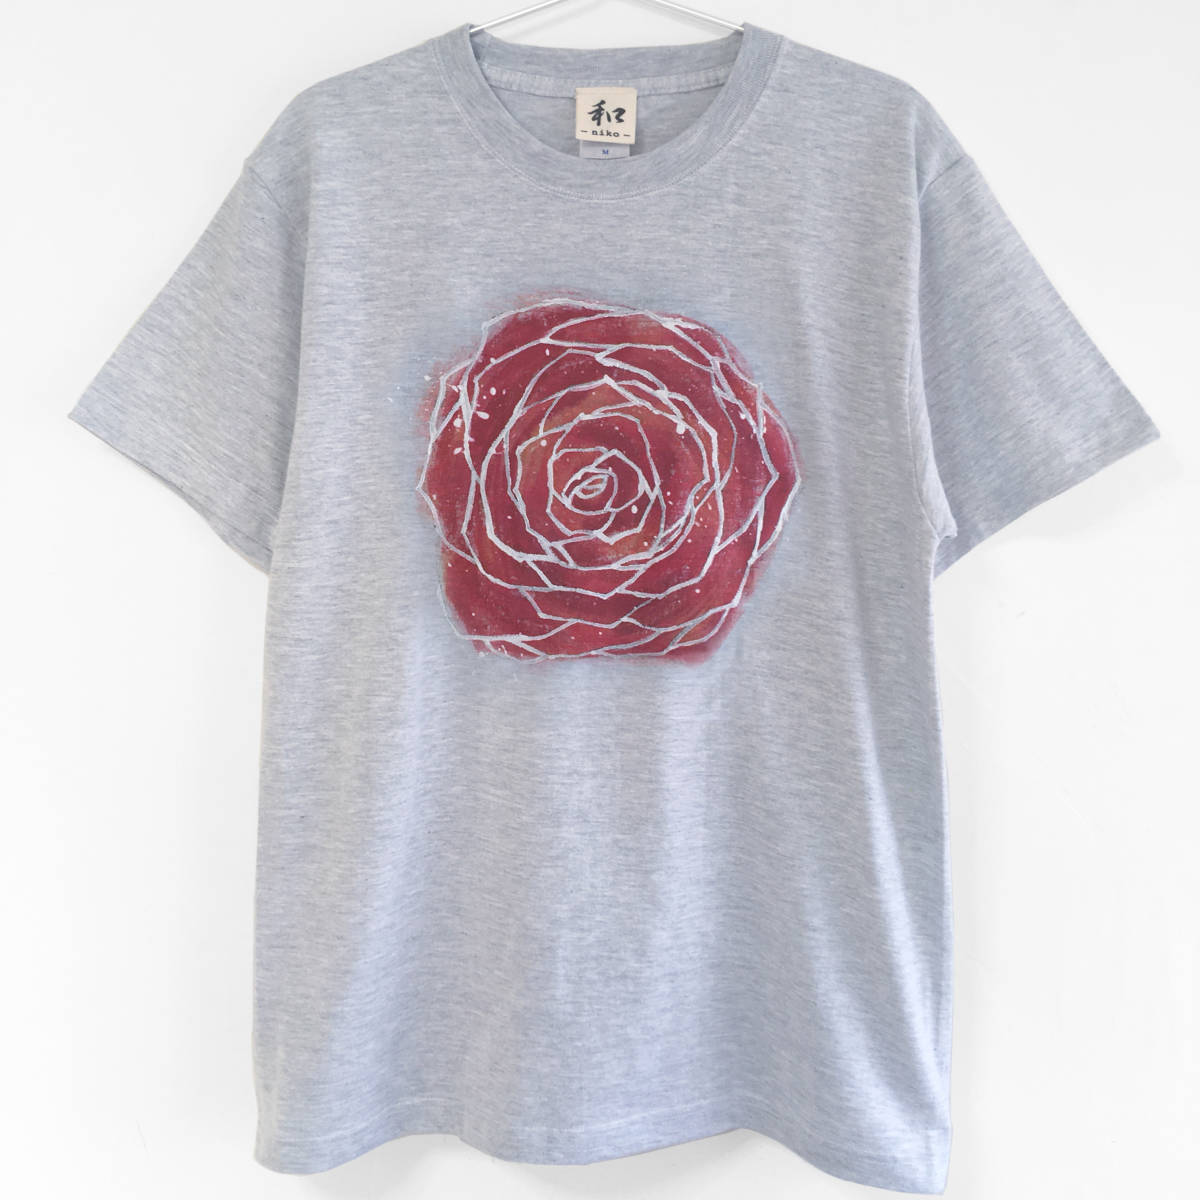 男士 T 恤, 码, 玫瑰花卉印花, 手绘T恤, 随意的, 玫瑰, 水彩, 圣诞节, 大尺寸, 圆领, 图案